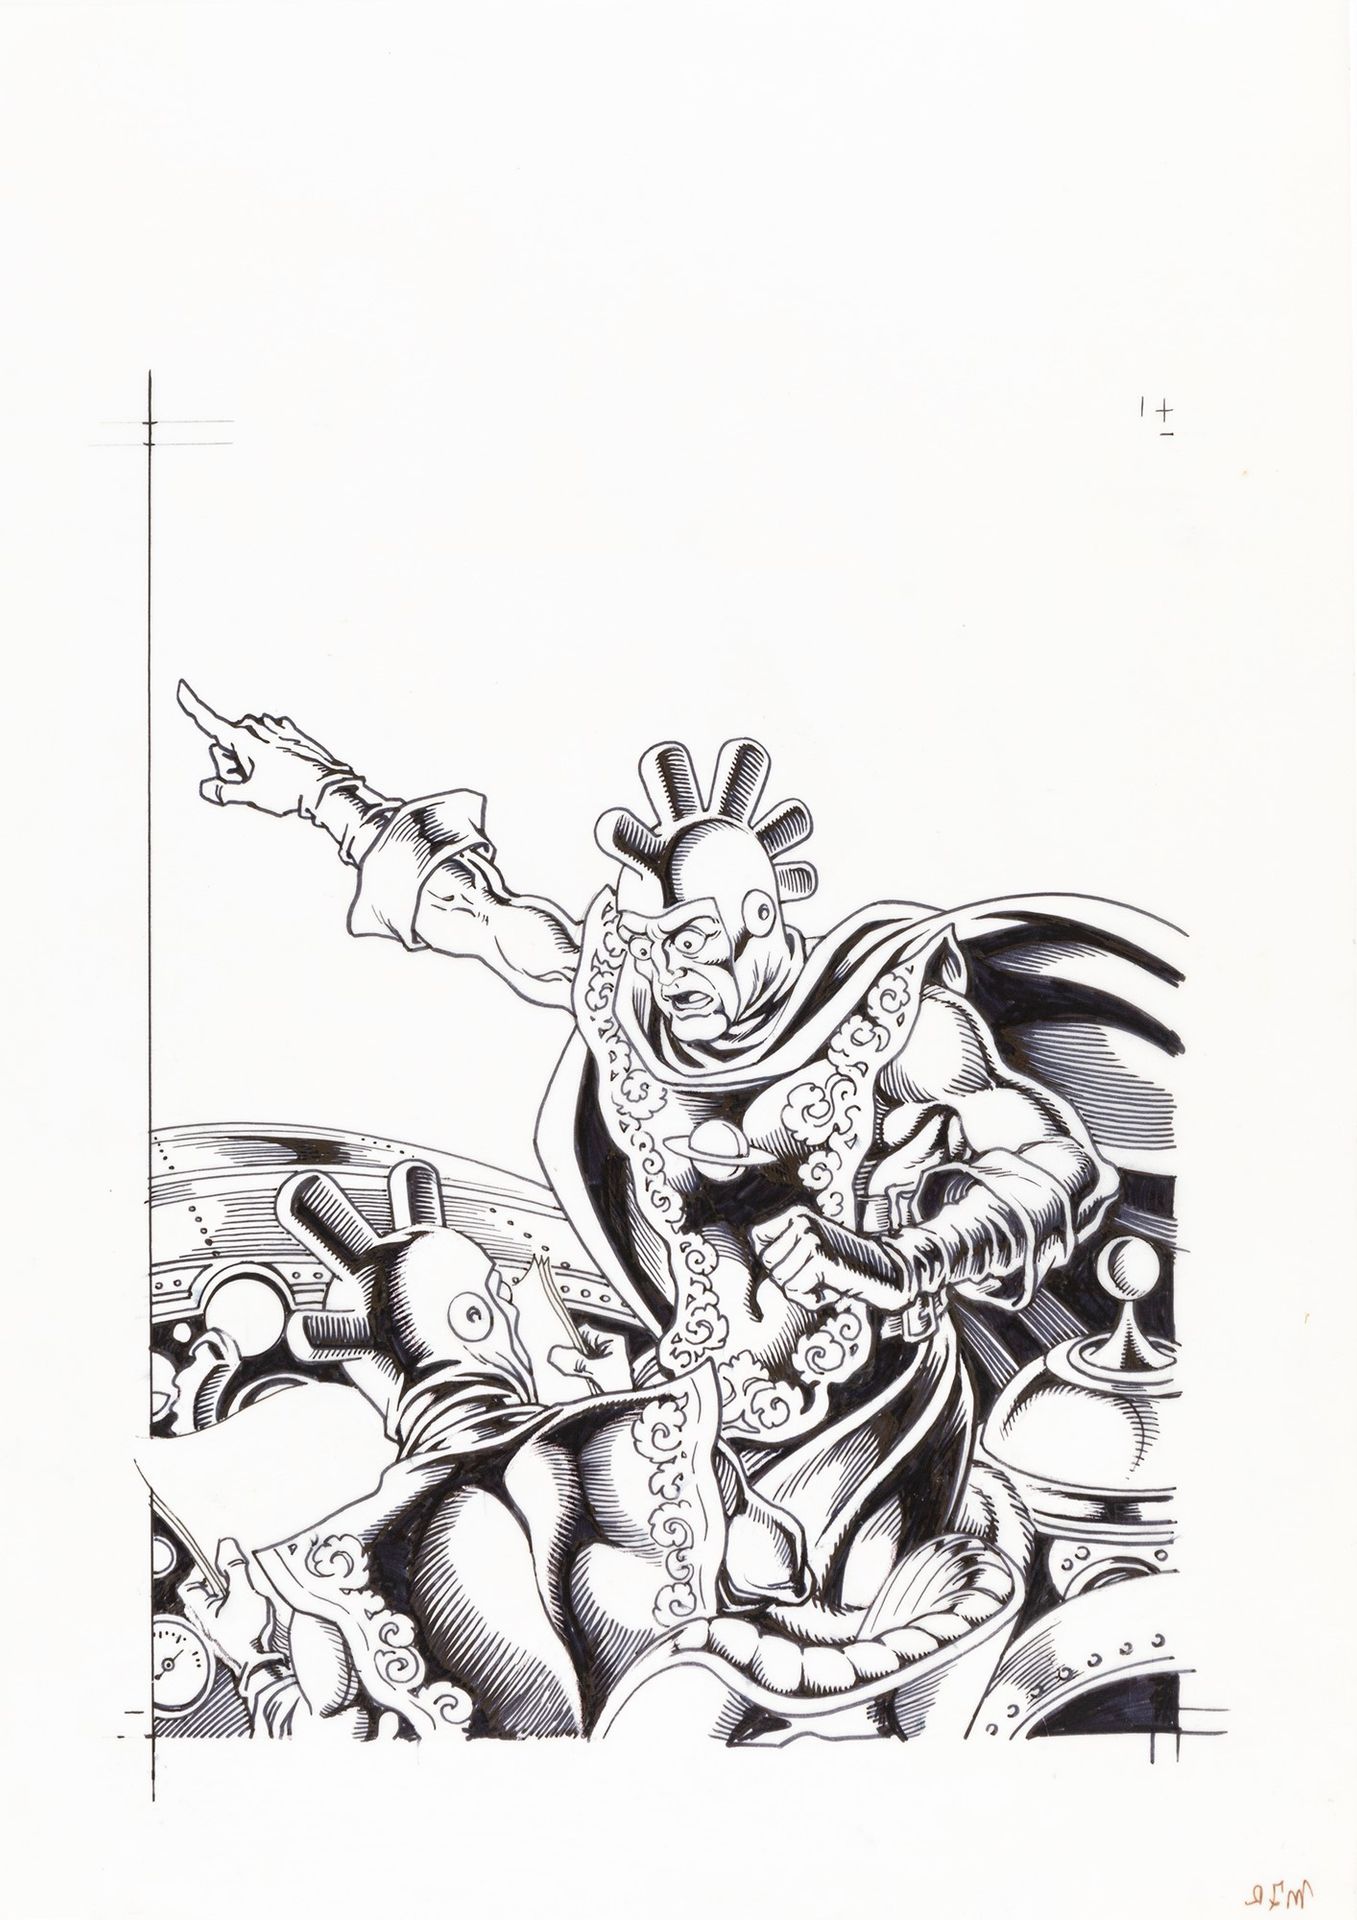 MAGNUS (ROBERTO RAVIOLA) Comic Art n. 77, 1991

Tusche und Filzstift auf Transpa&hellip;